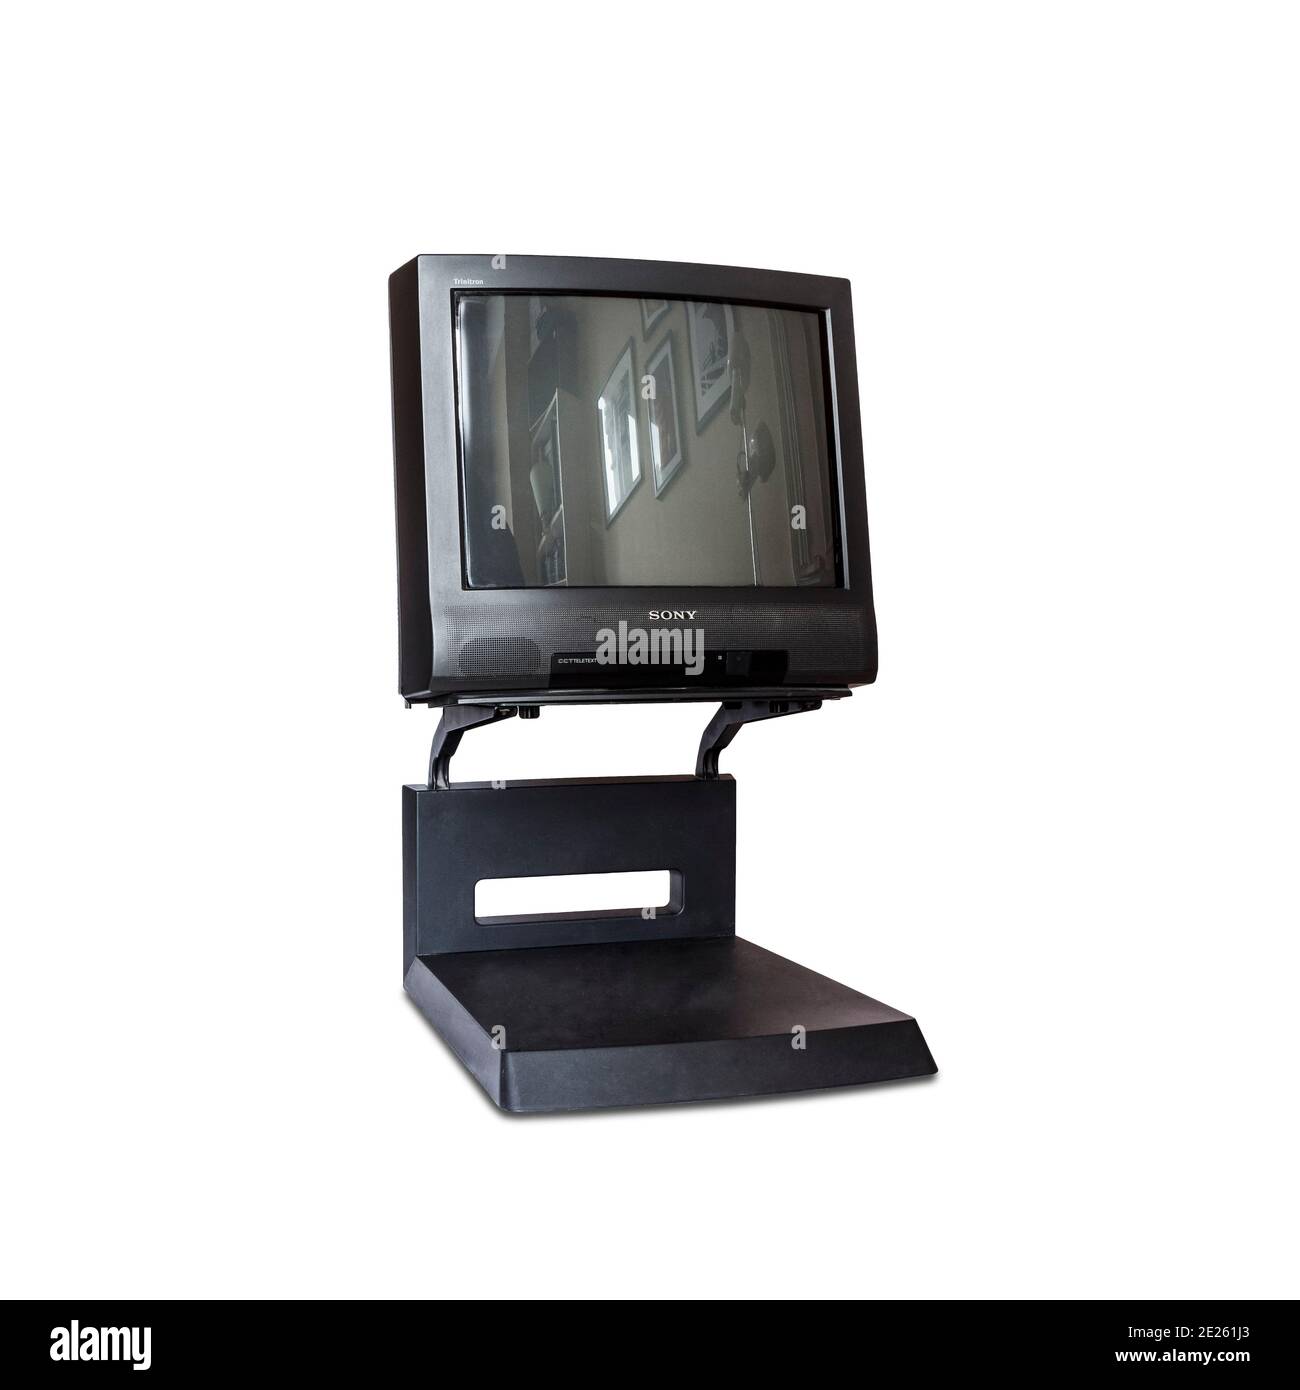 Un téléviseur à tube cathodique Sony Trinitron noir 1996 installé sur son support, isolé sur un fond blanc Banque D'Images